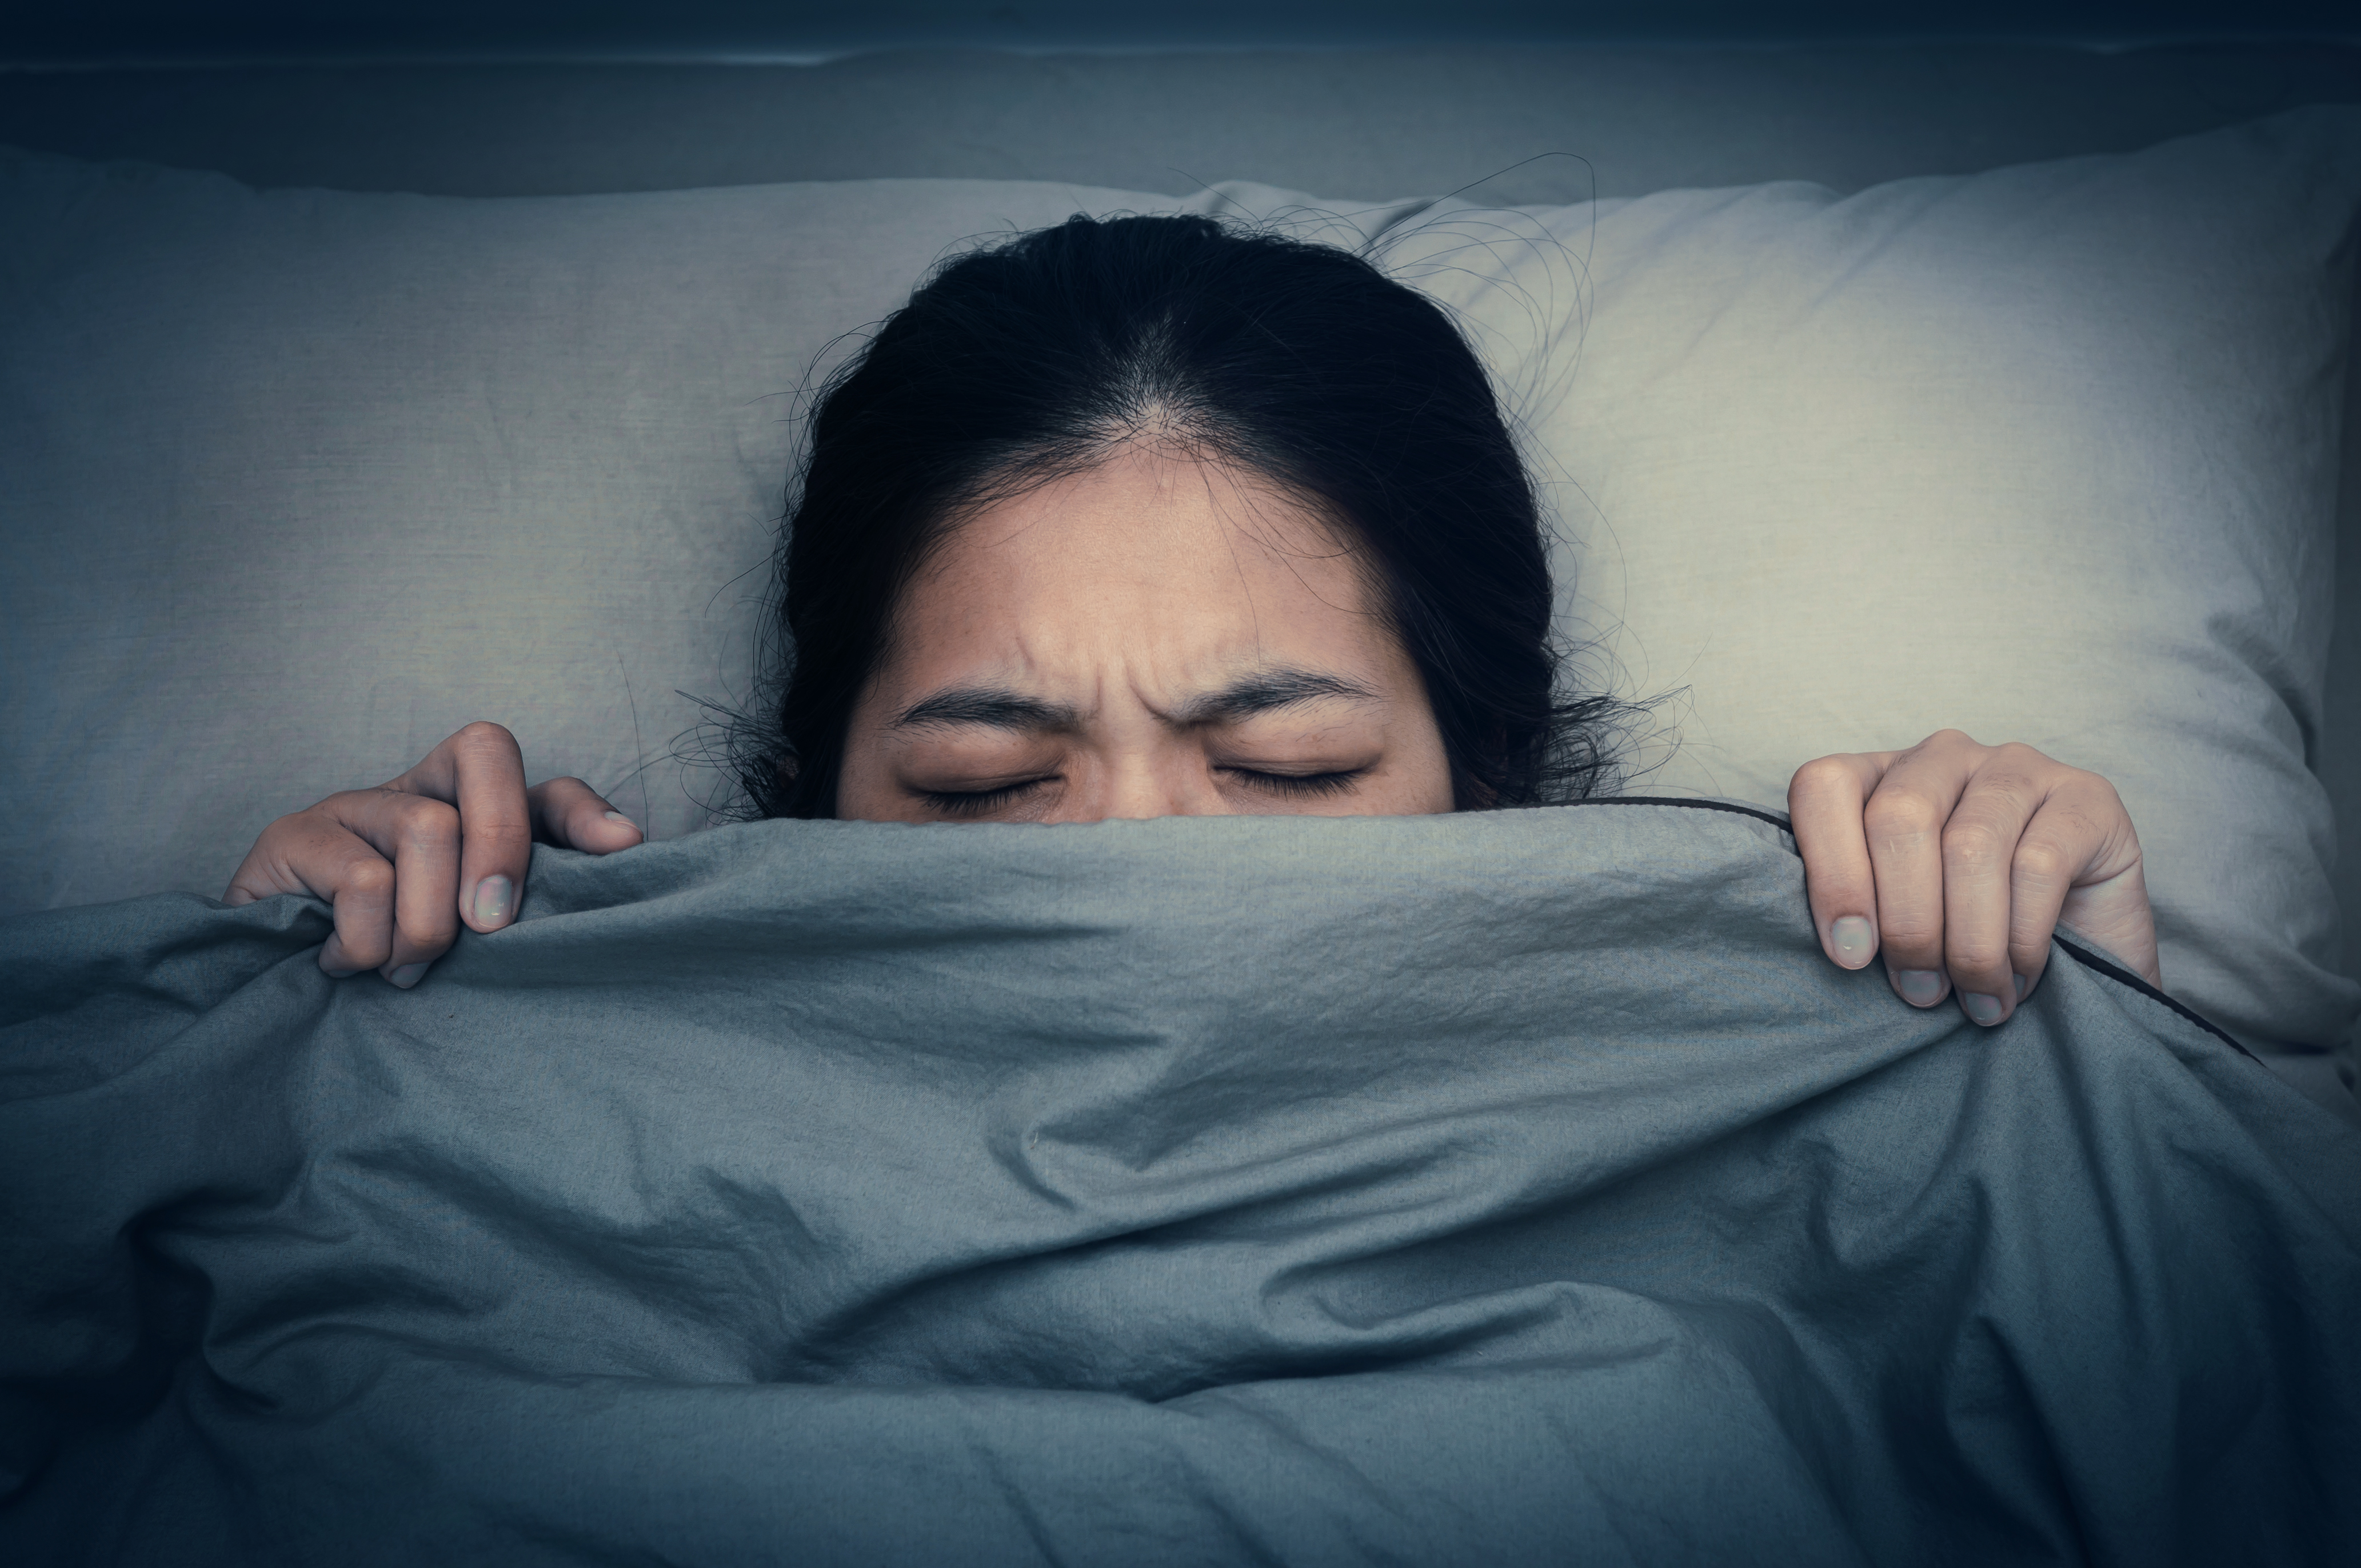 Las pesadillas ocurren durante el sueño REM.